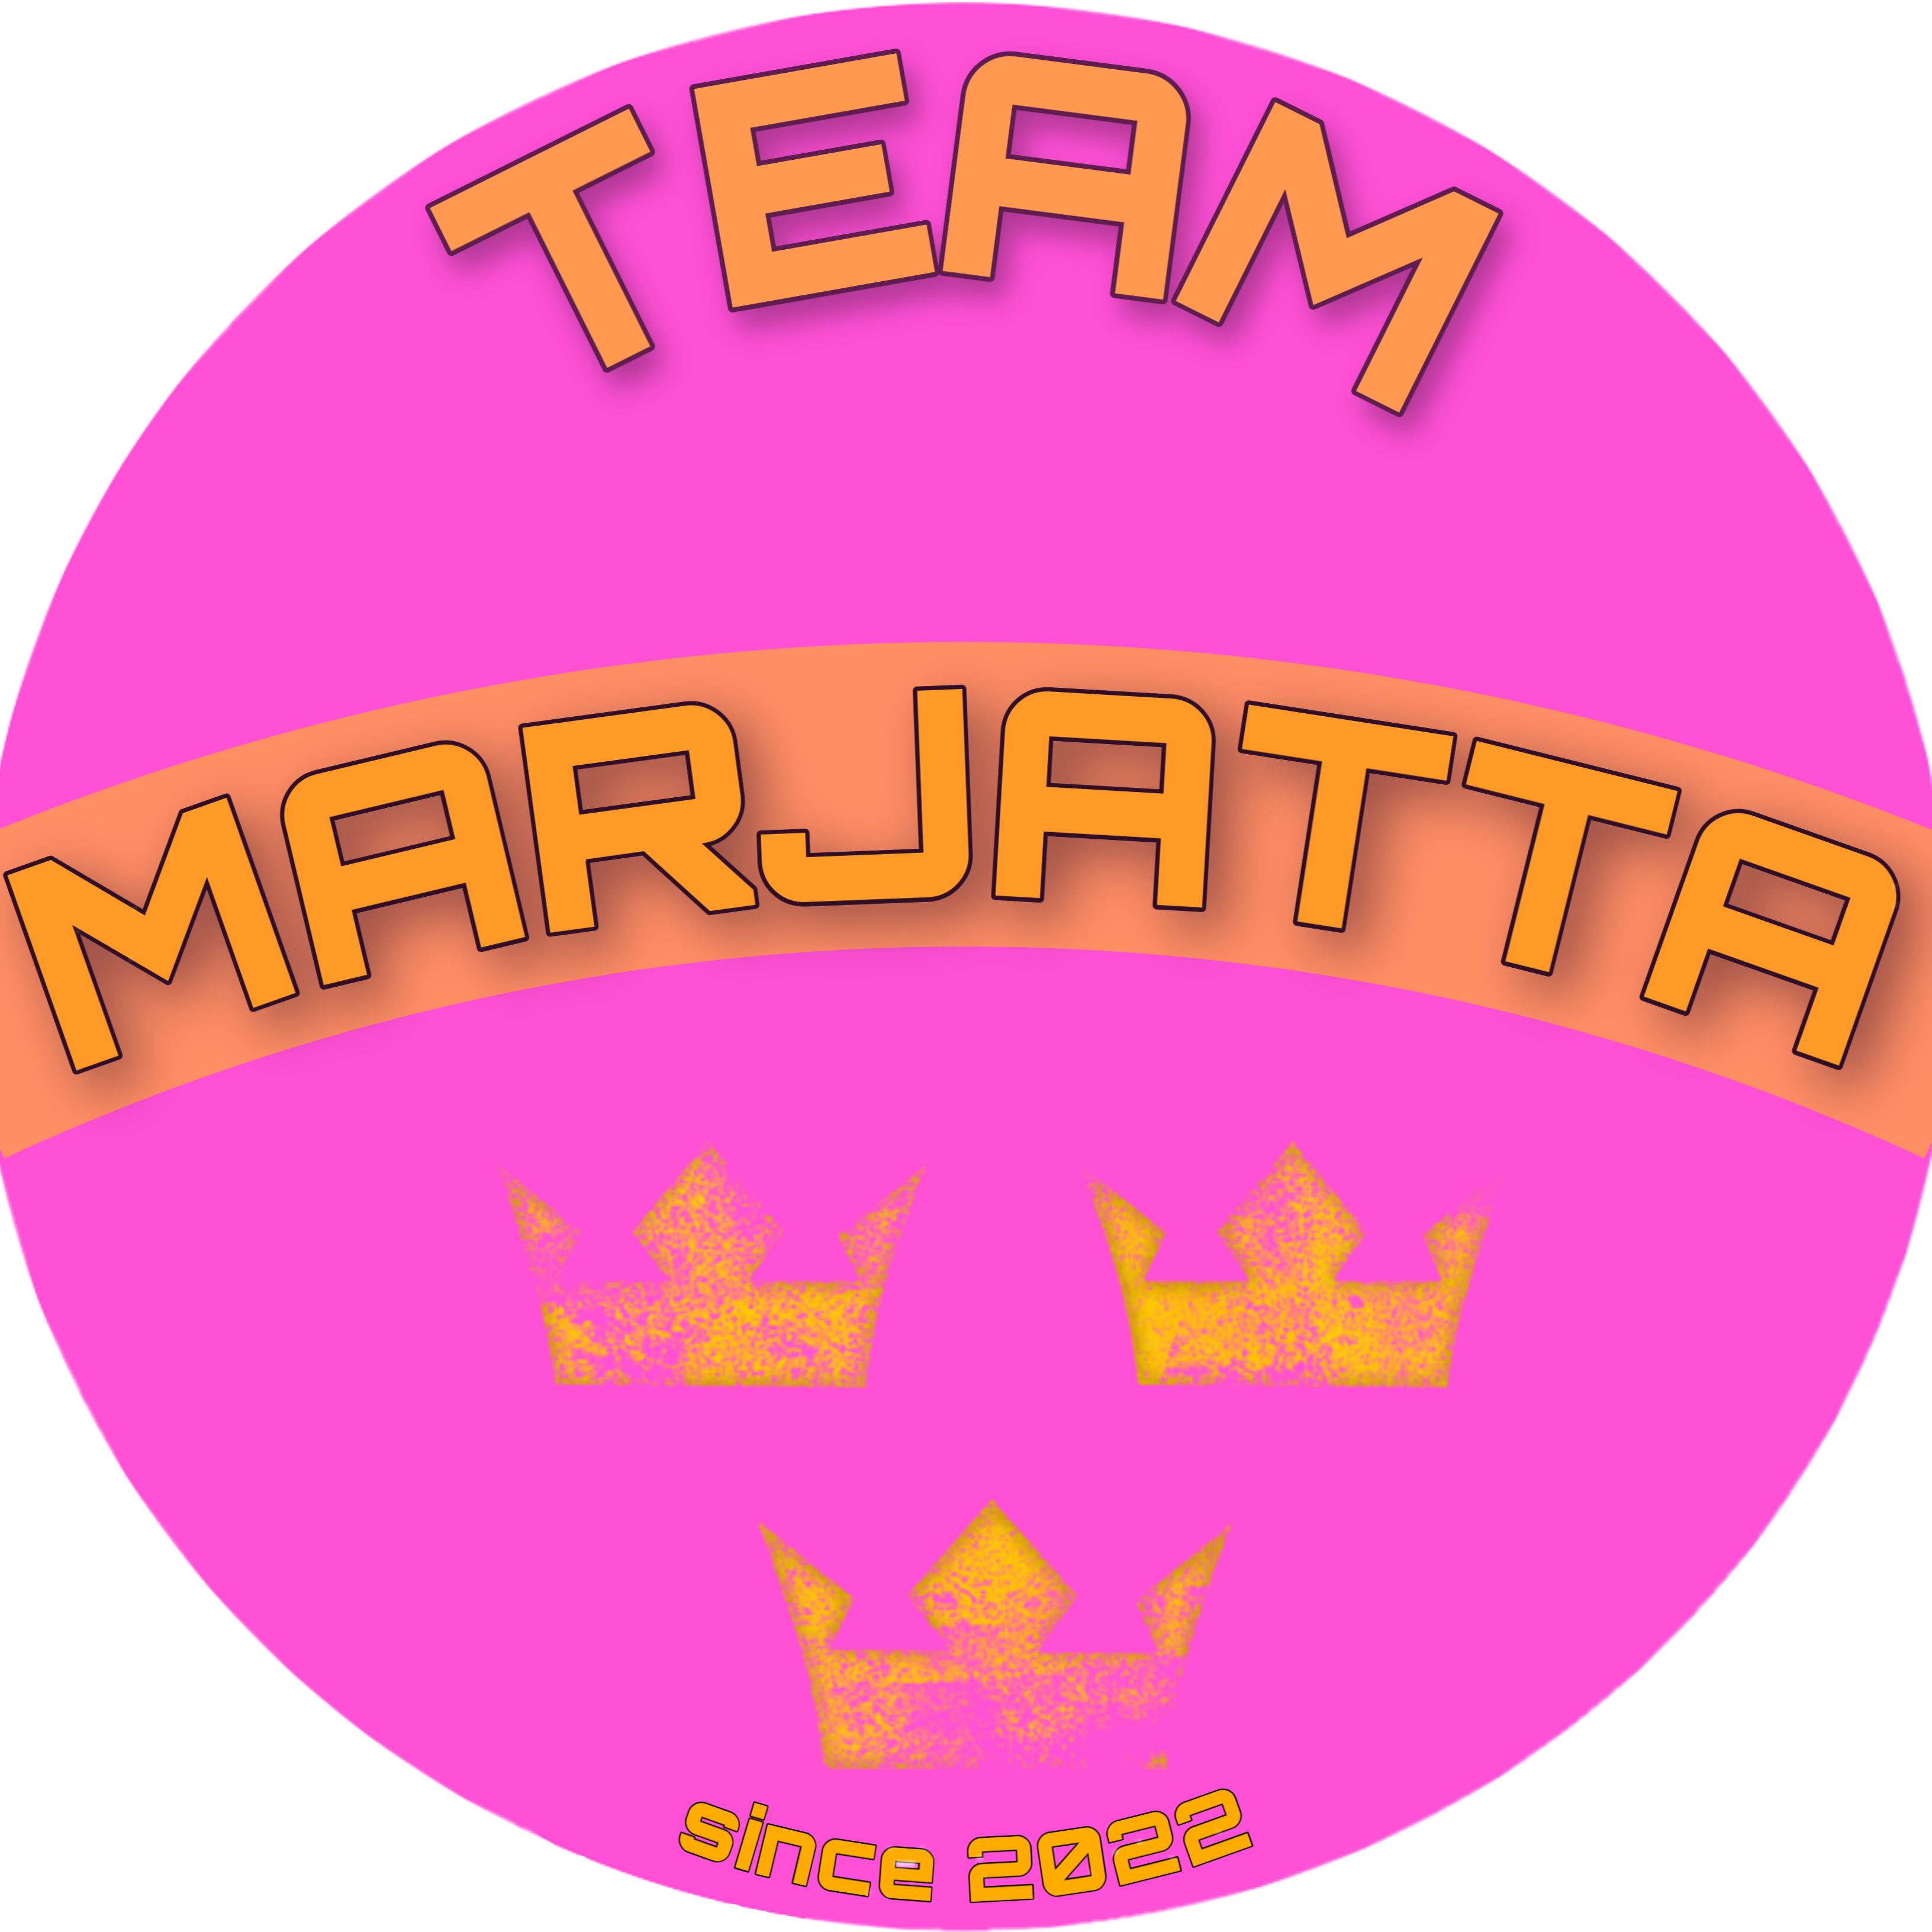 Team Marjatta